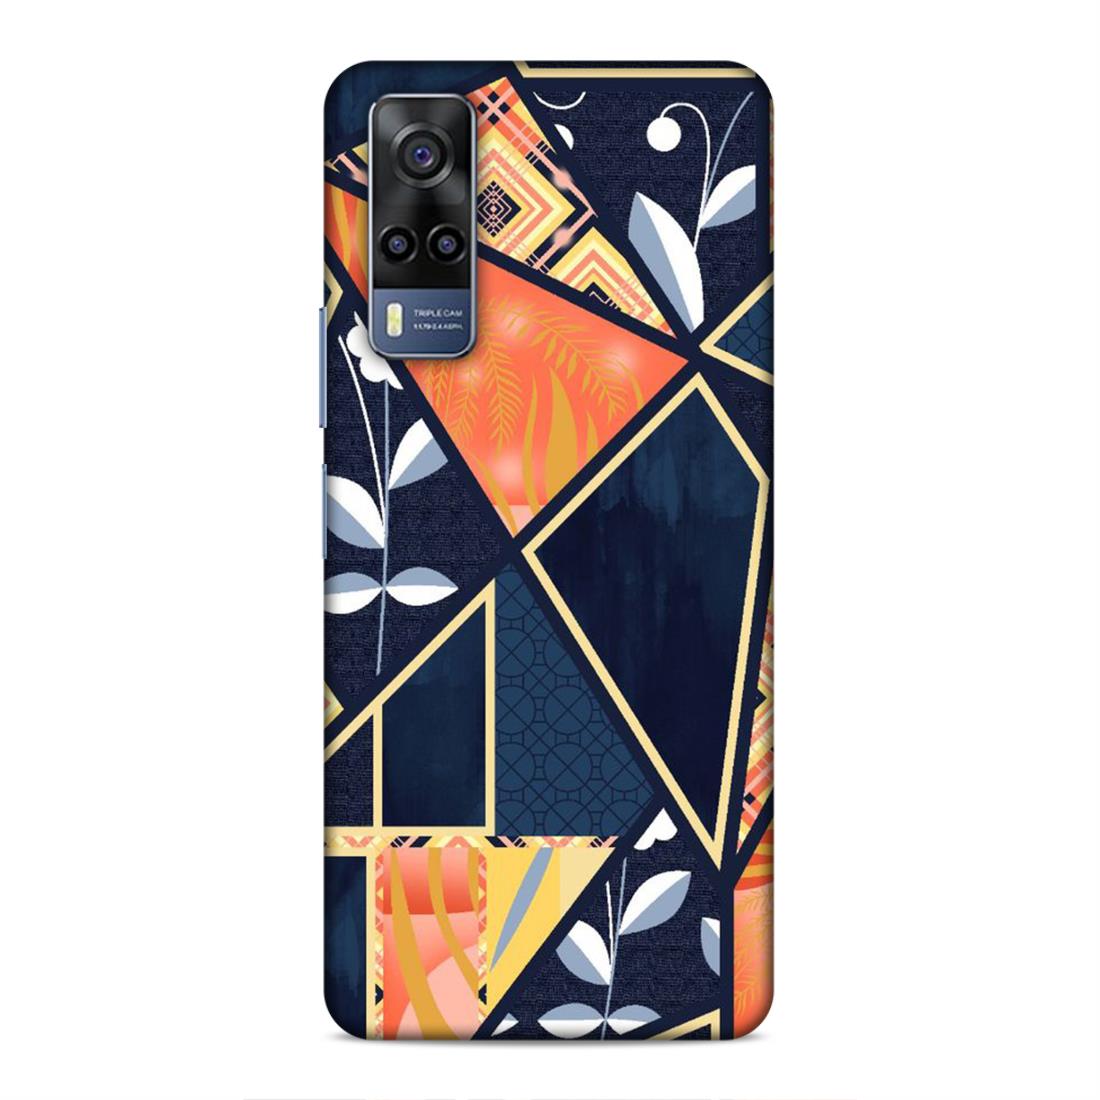 Floral Textile Pattern Hard Back Case For Vivo iQOO Z3 / Y53s 4G